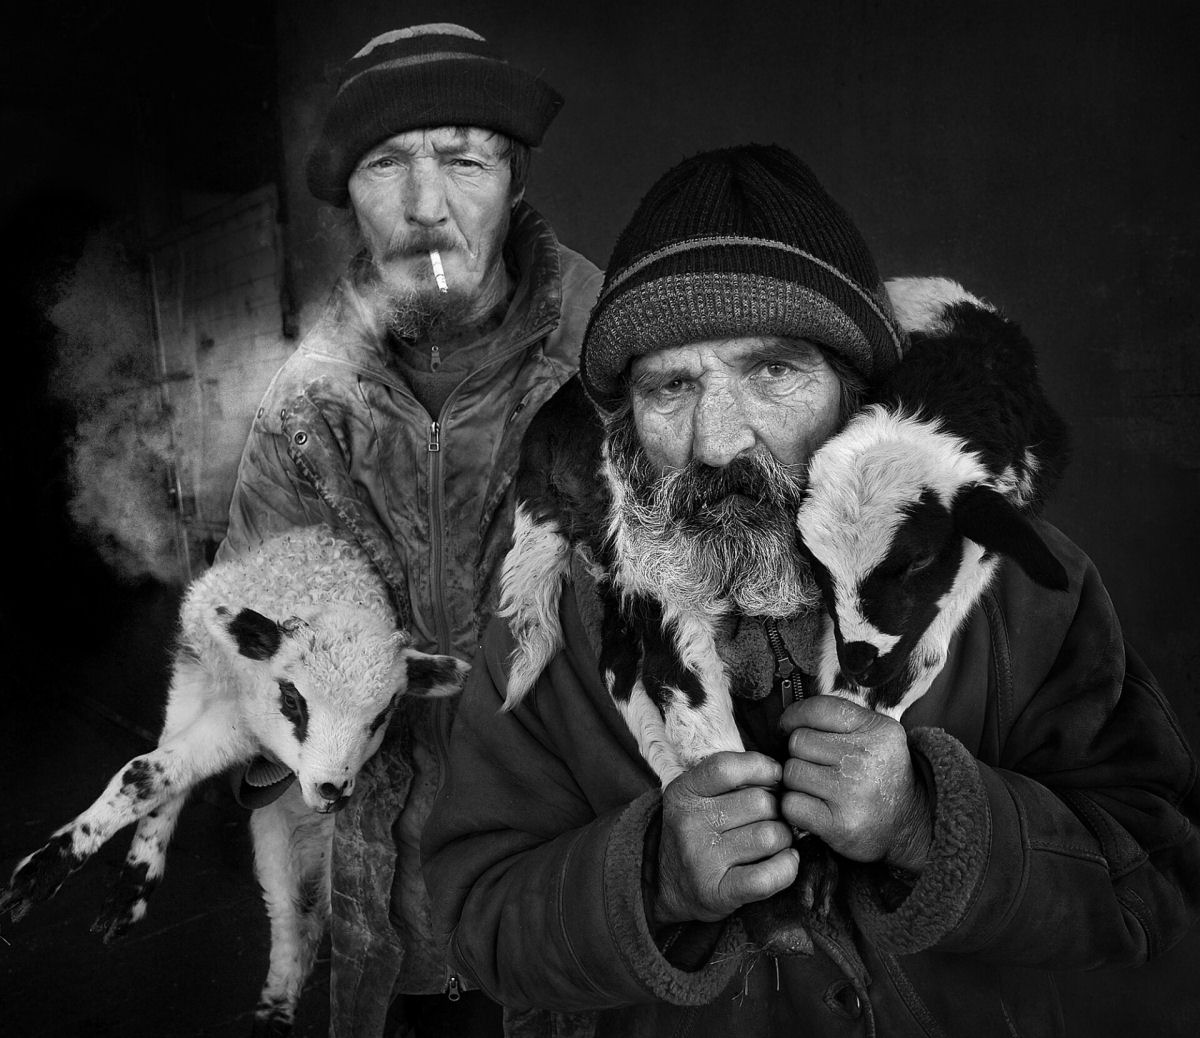 Retratos em P&B mostram os fortes laços entre pastores da Transilvânia e seus rebanhos 08